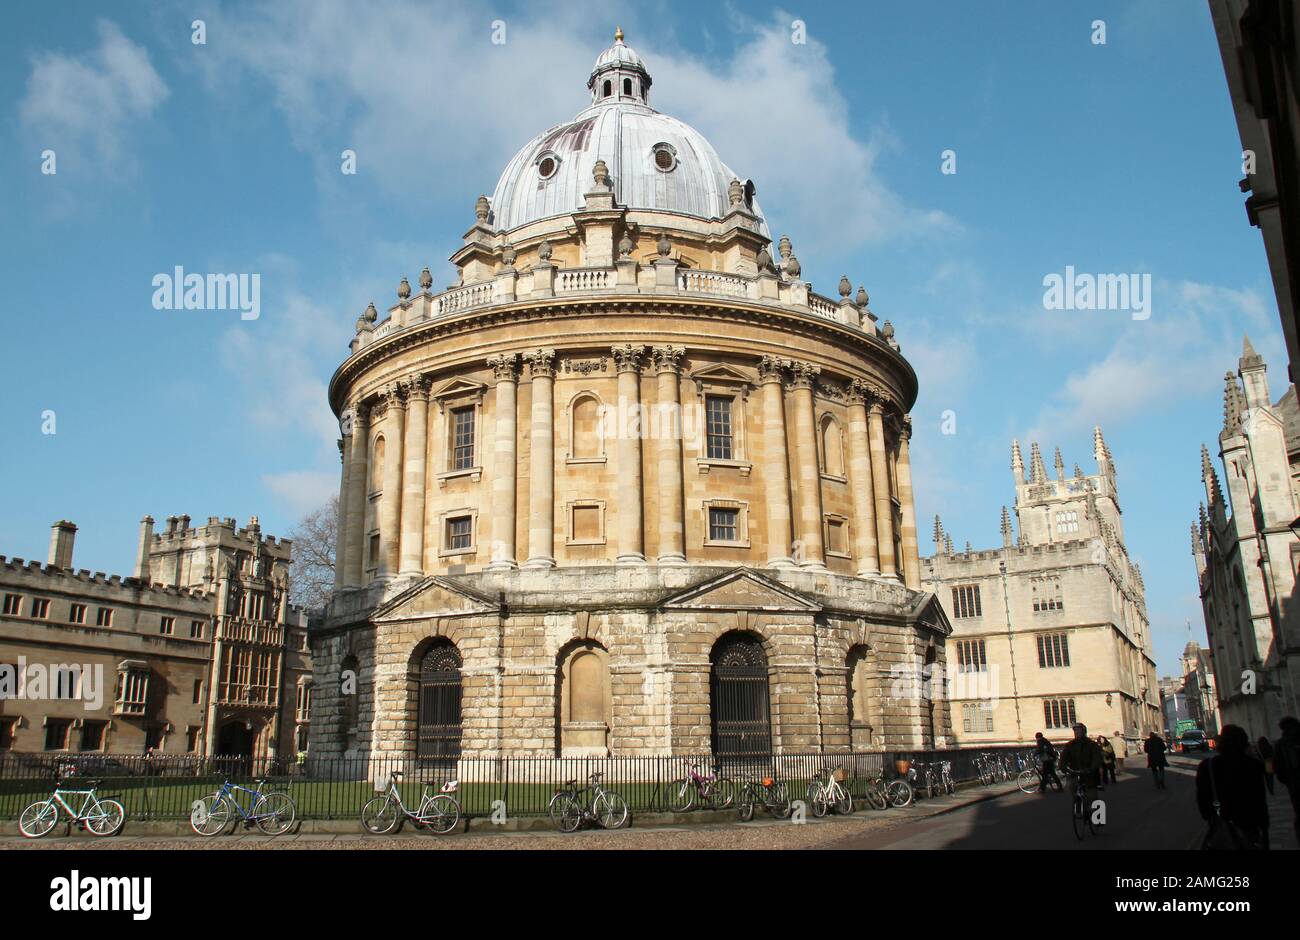 La bibliothèque Bodleian créée en 1602 est l'une des plus anciennes bibliothèques d'Europe. Il est utilisé comme principale bibliothèque de recherche Université d'Oxford. Banque D'Images